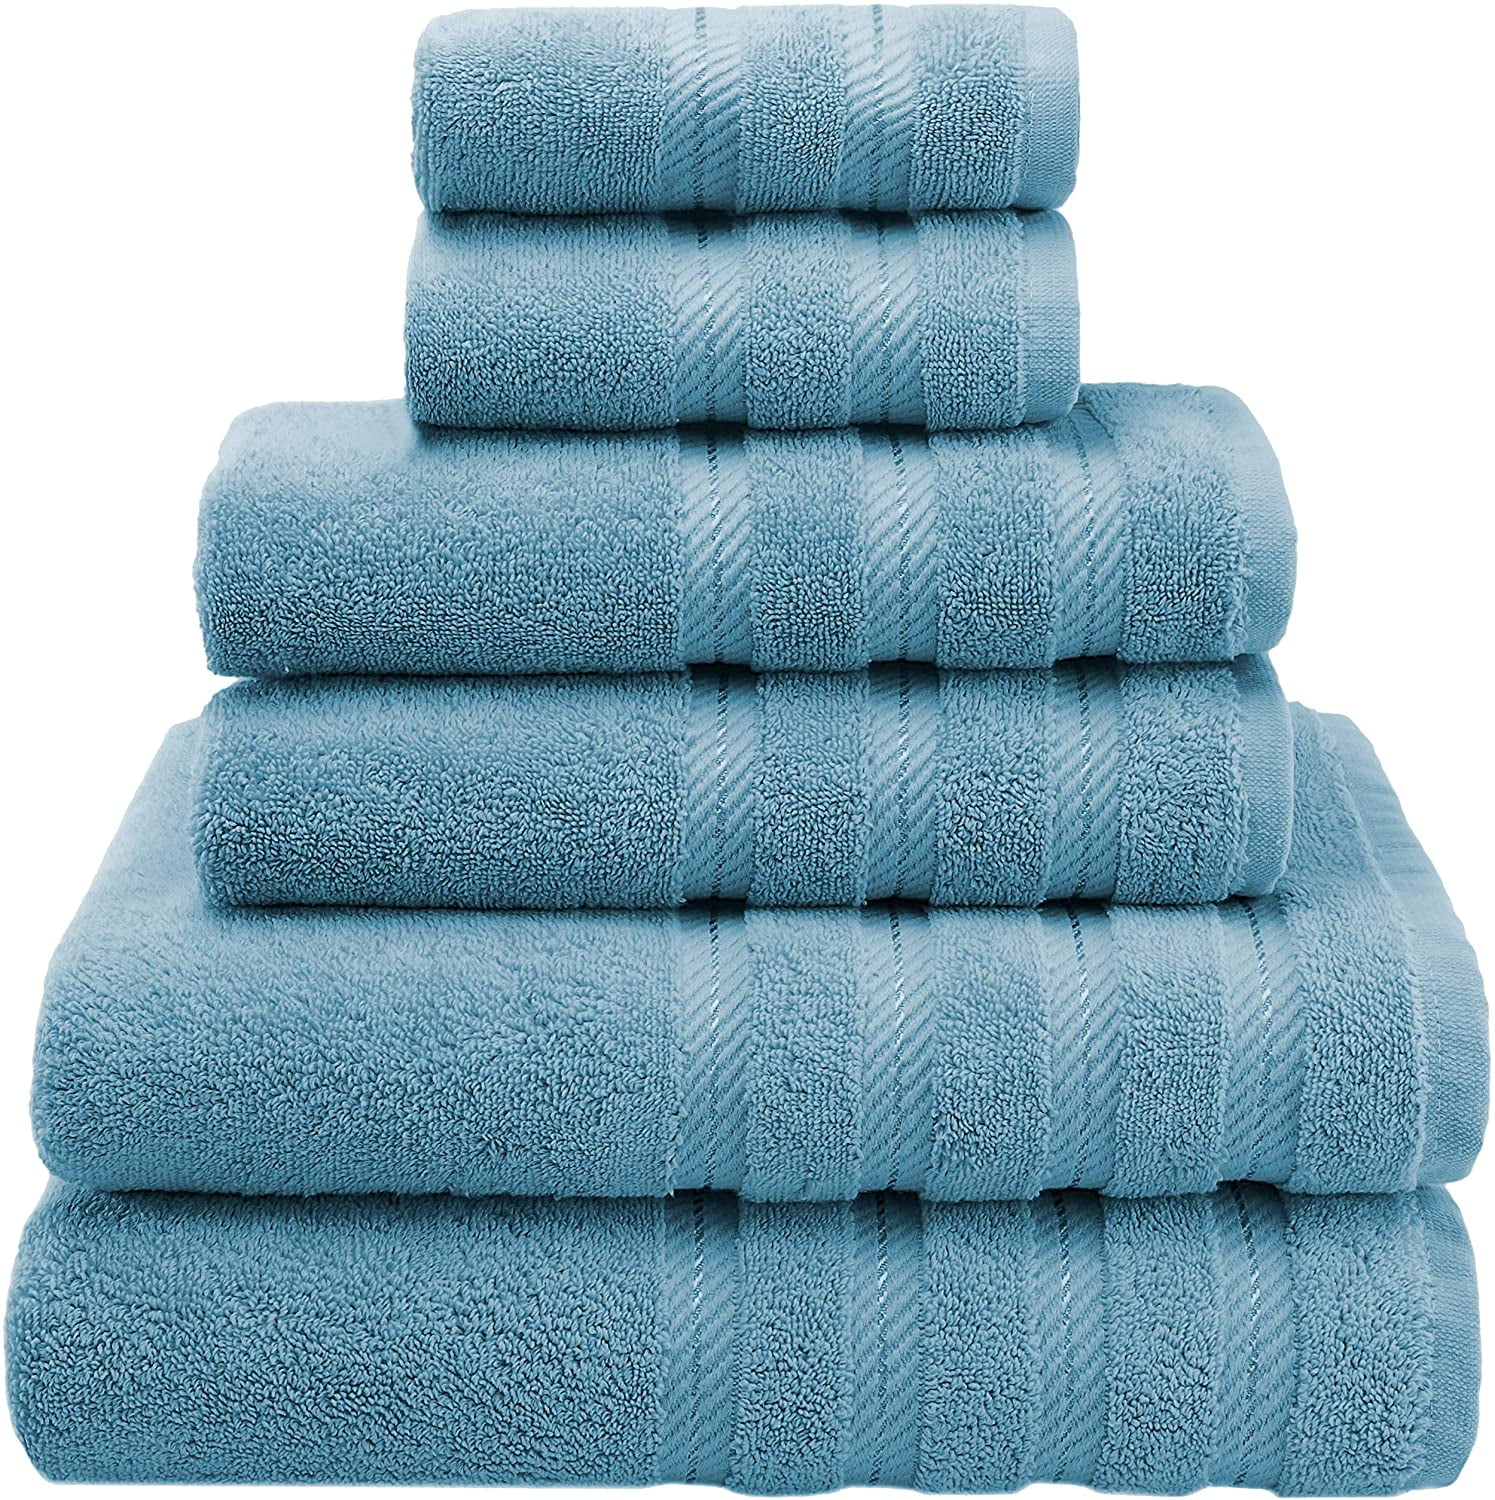 BNM Turkish Cotton Luxury Hotel 2 Piece Bath Towel Set, Teal